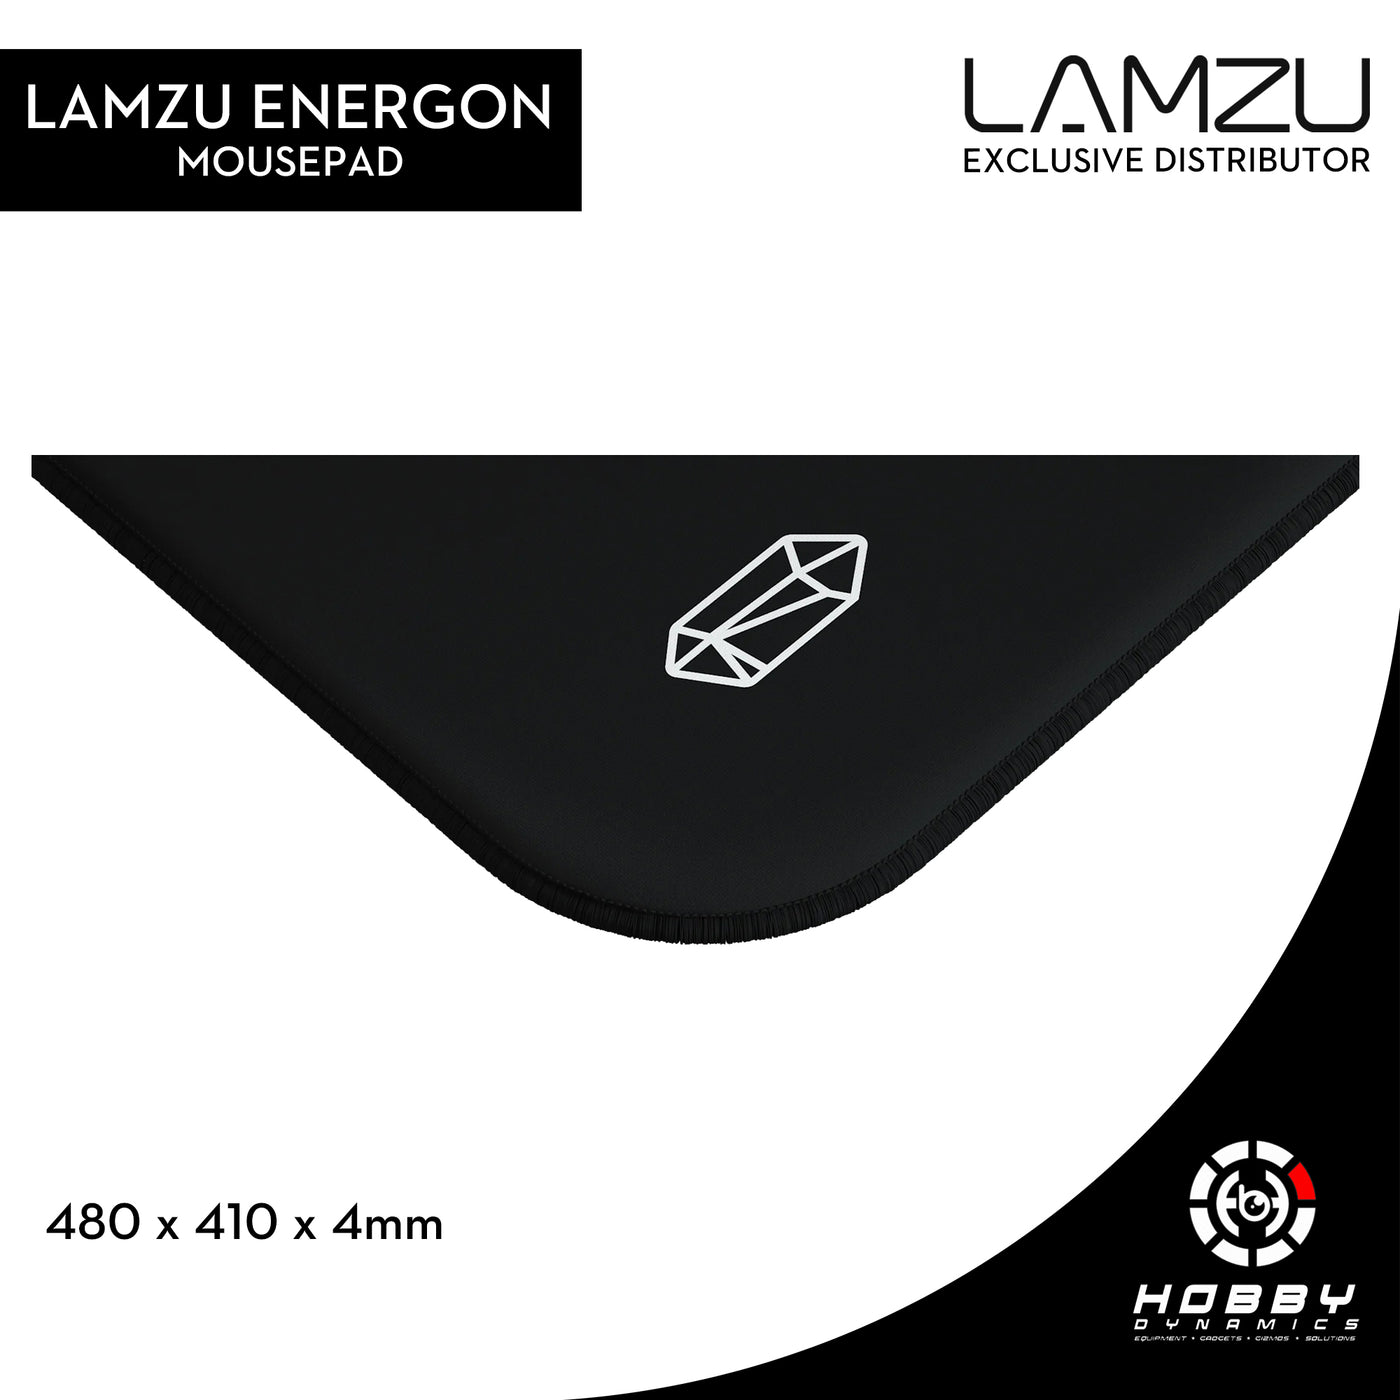 Lamzu Energon Mousepad